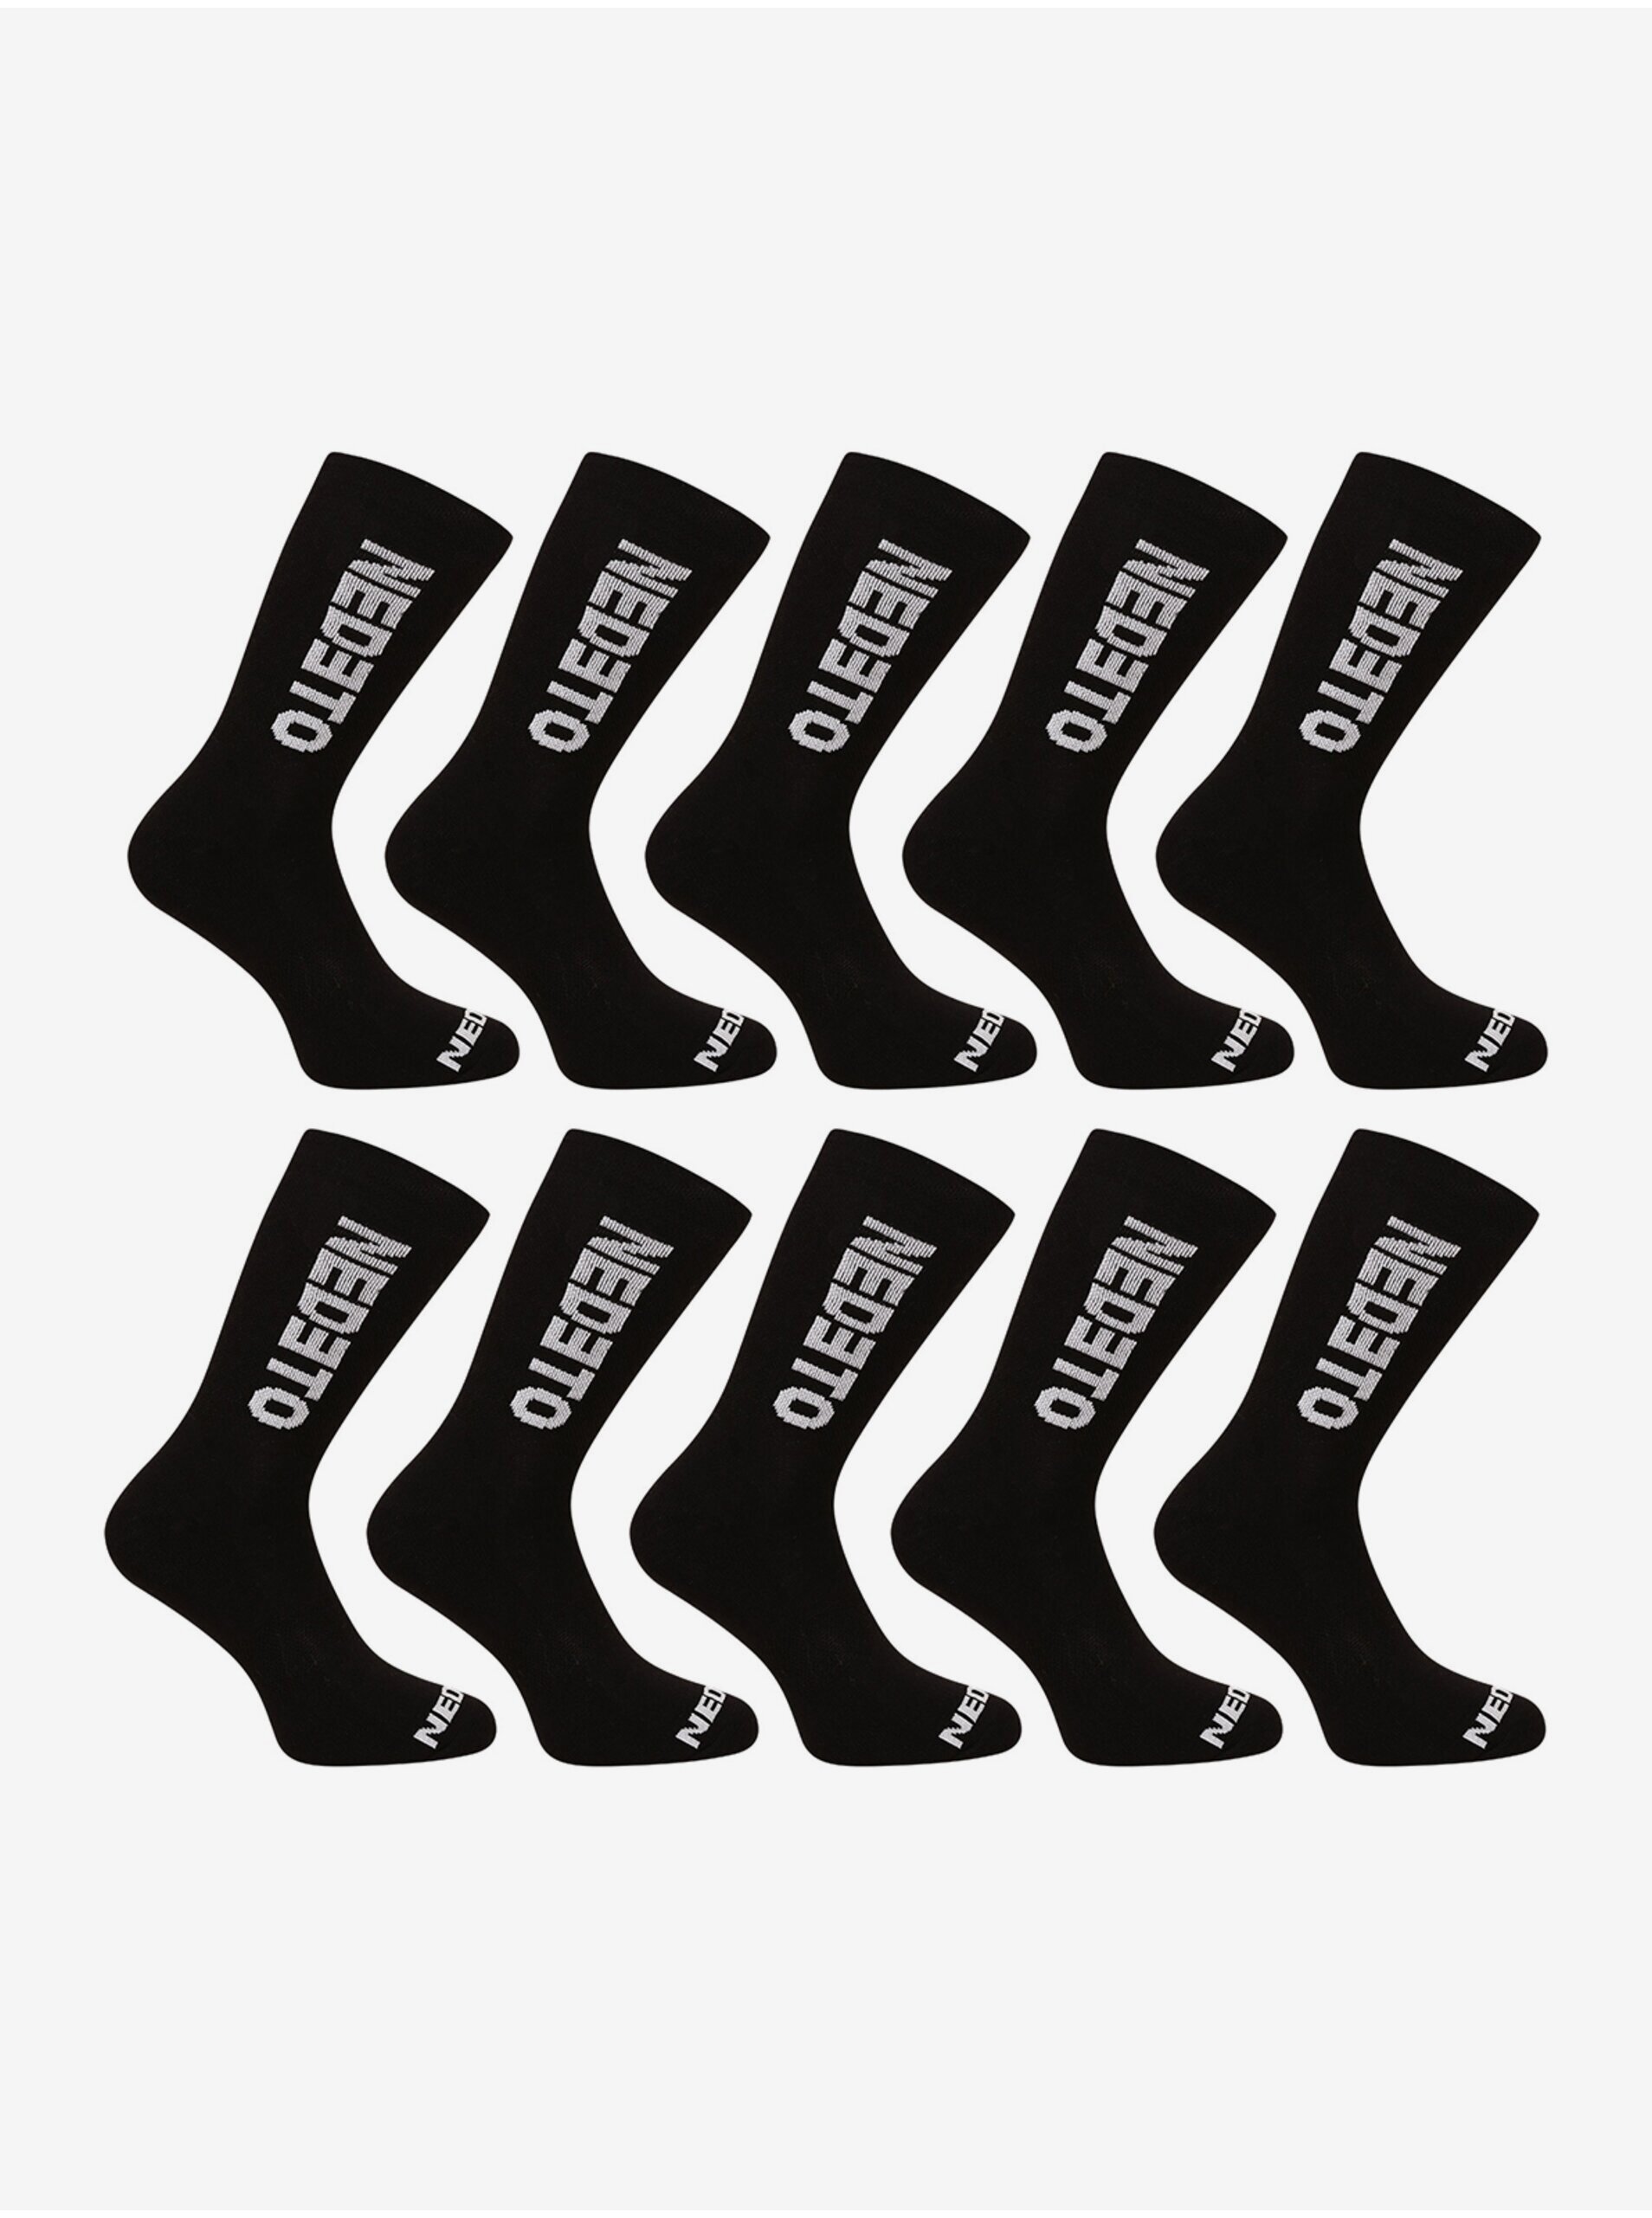 E-shop Sada deseti párů pánských ponožek v černé barvě Nedeto